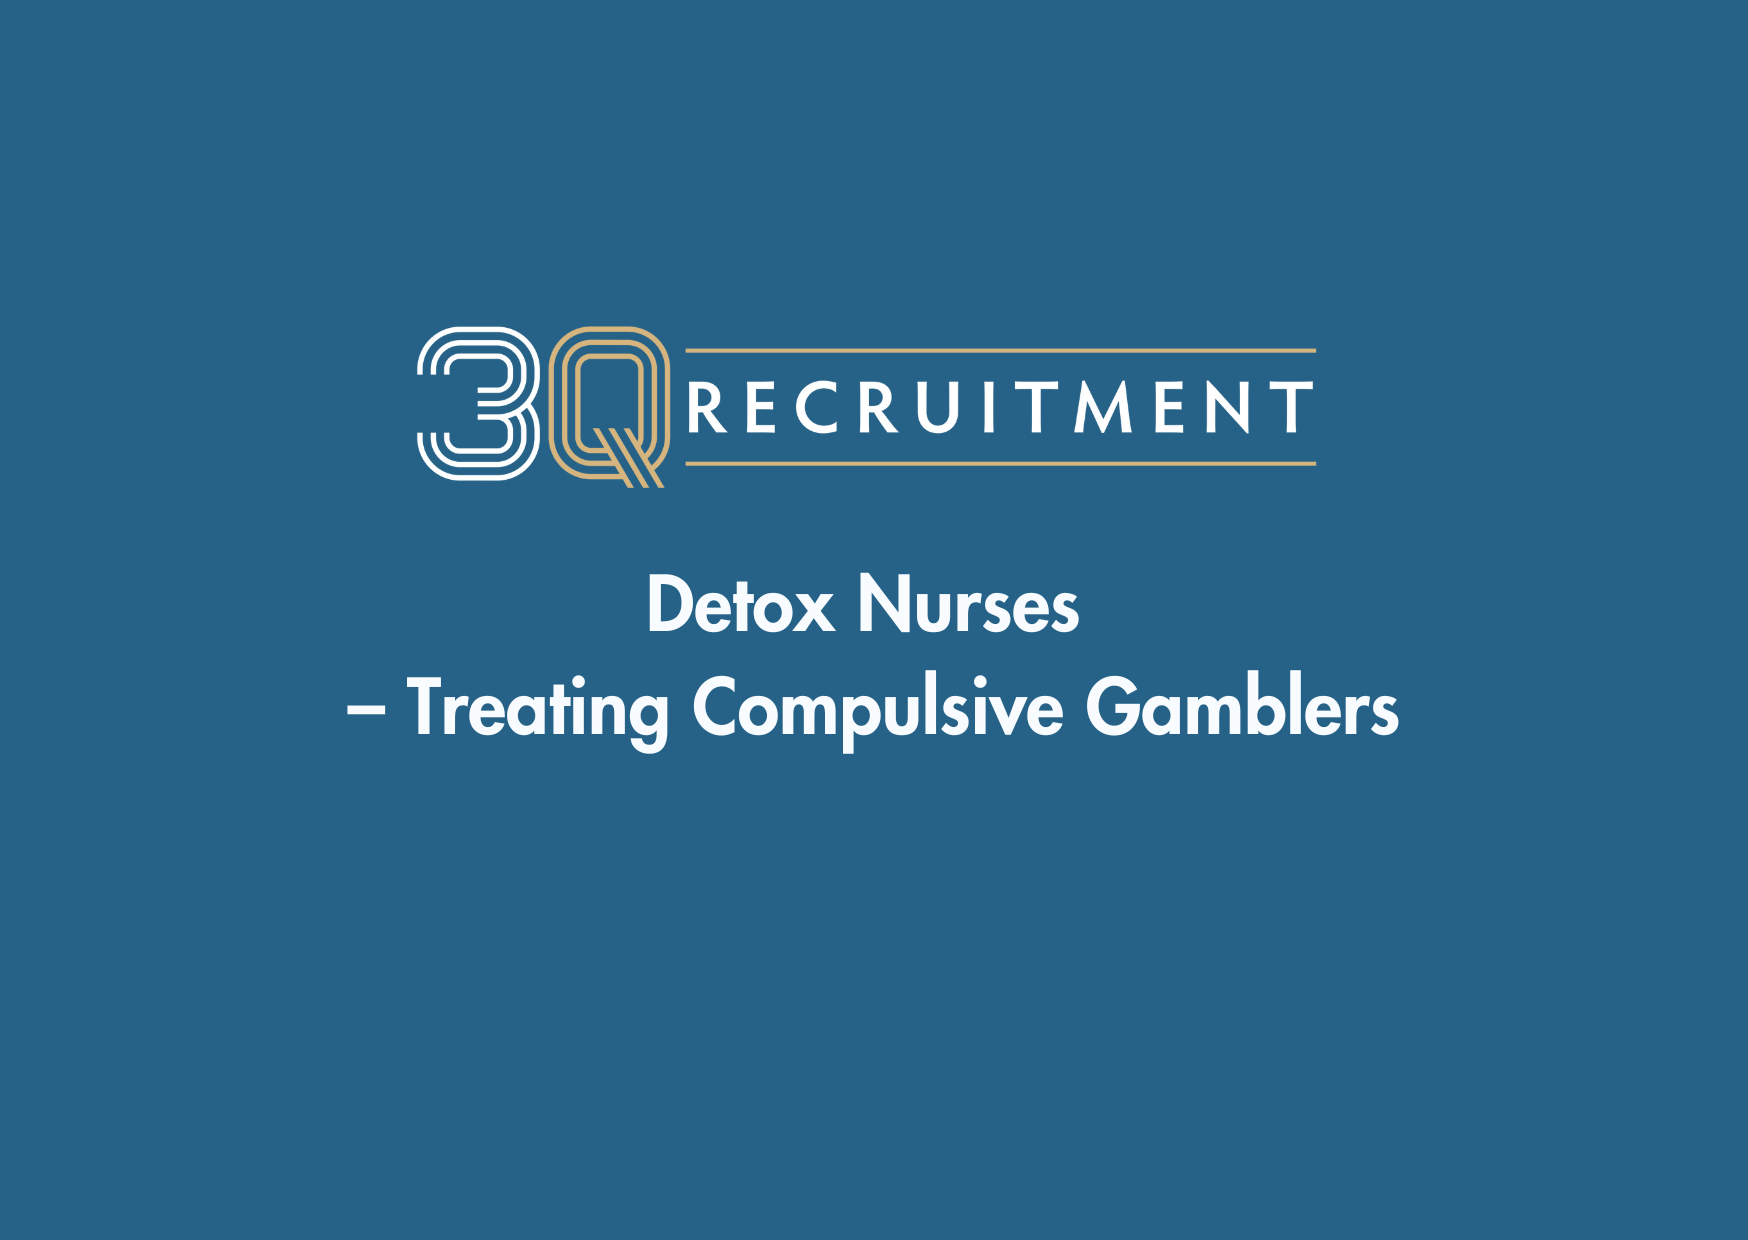 3Q Recruitment Detox Nurses - Treating Compulsive Gamblers